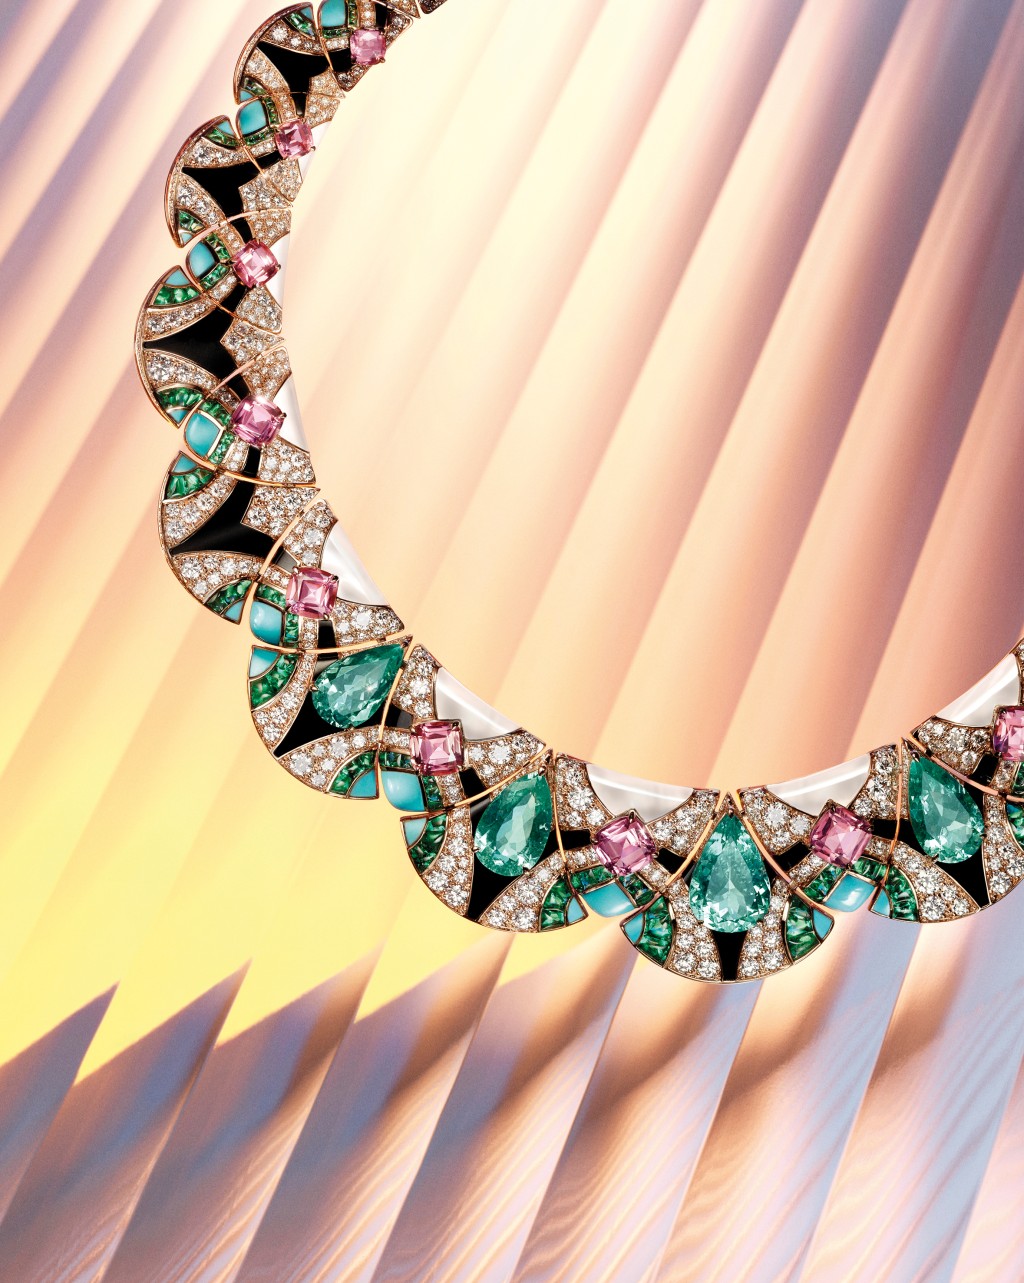 Mosaic of Time項鏈包括150個不同模組完美連接，拼湊出色彩豐富的馬賽克。項鏈鑲嵌帕拉伊巴碧璽、粉紅色碧璽、綠松石及祖母綠等，布局平衡有致。